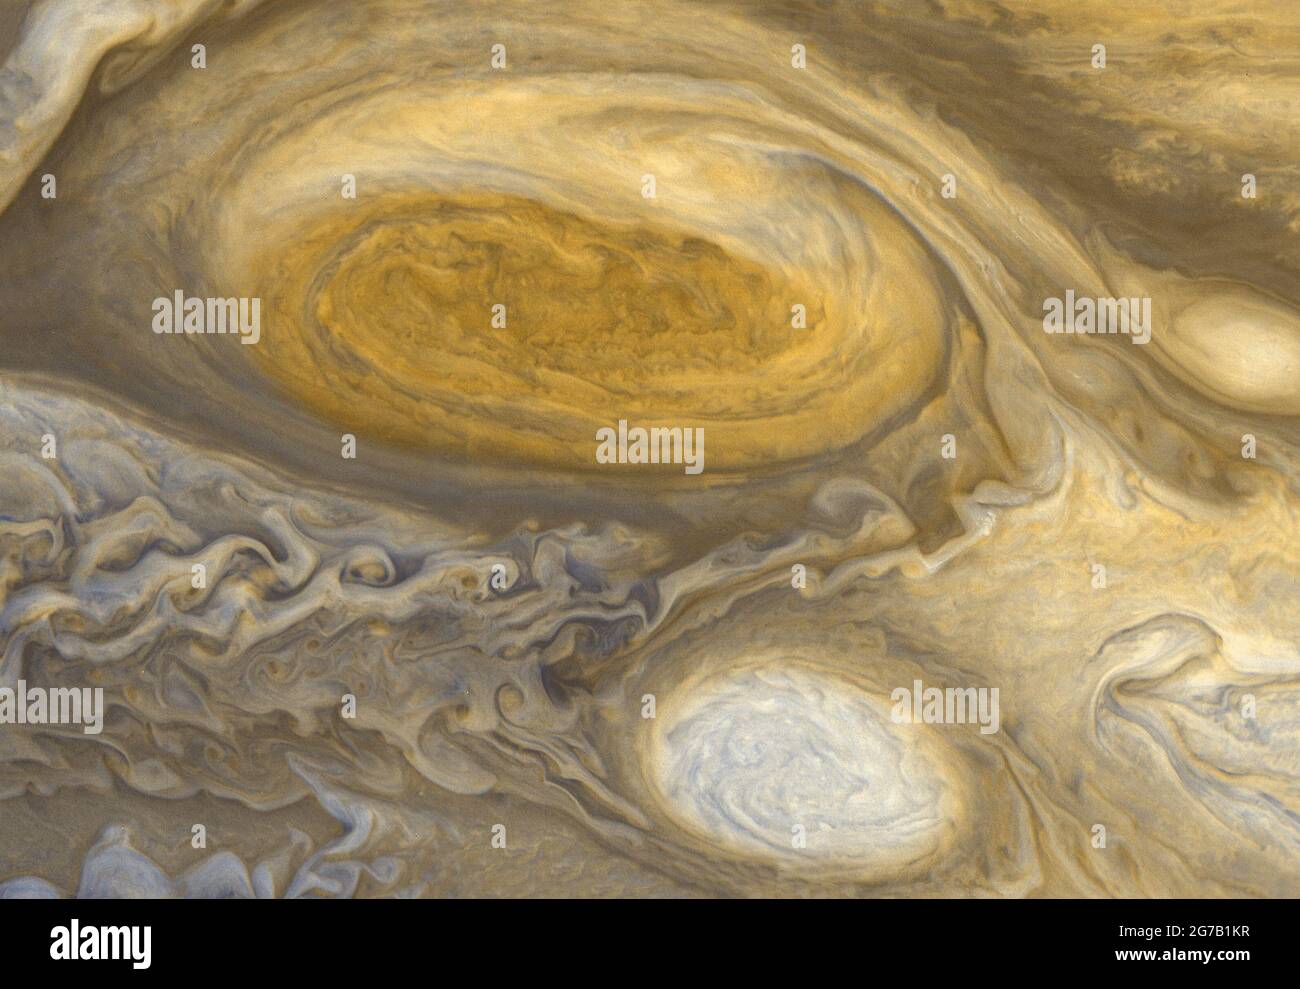 La cintura equatoriale del Sud di Giove è catturata in questa immagine a colori migliorata dalla navicella spaziale Juno della NASA. Una versione ottimizzata e migliorata di un'immagine NASA / credito NASA Foto Stock